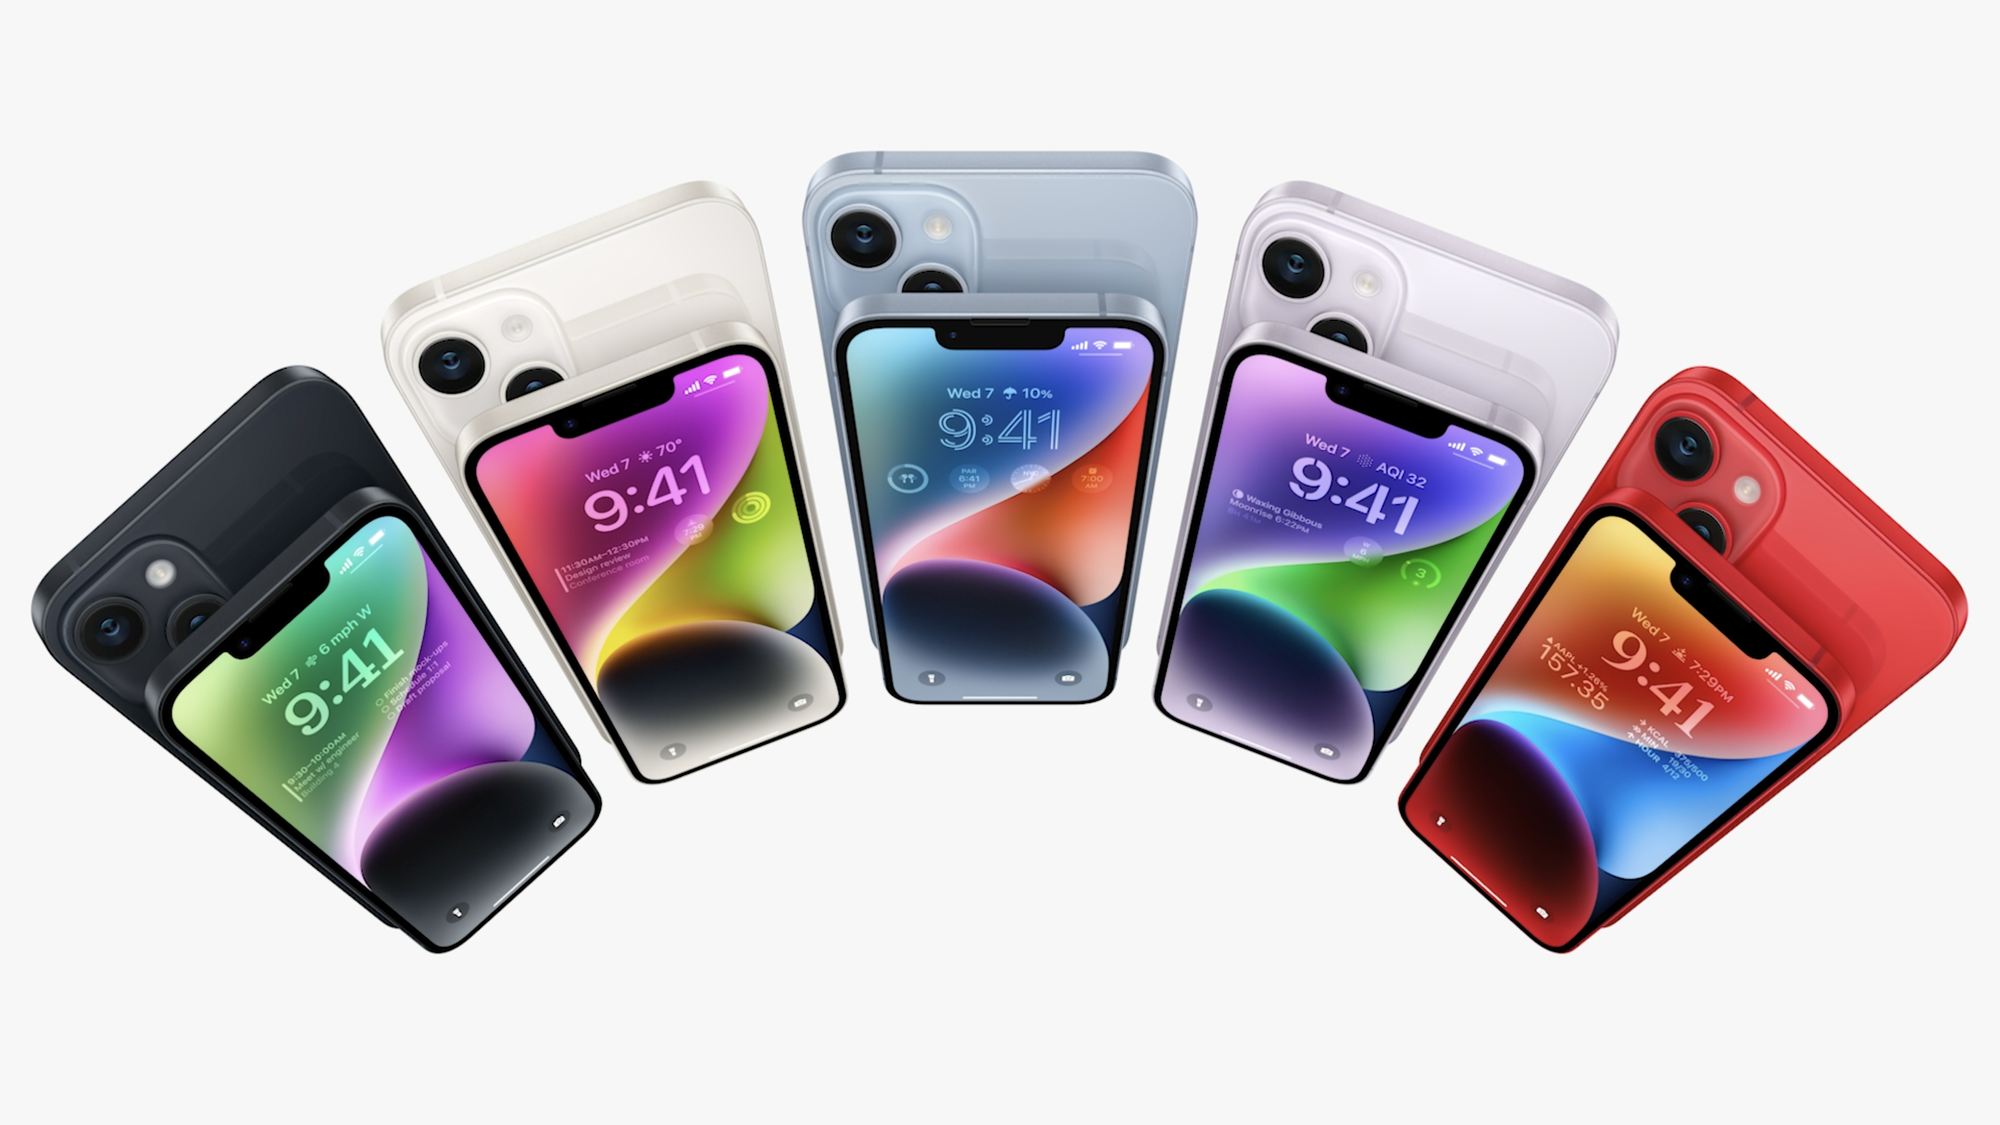 iPhone 14 và iPhone 14 Plus: Thiết kế không đổi, camera selfie tự động lấy nét, chip A15, hỗ trợ liên lạc vệ tinh, giá từ 799 USD - Ảnh 1.